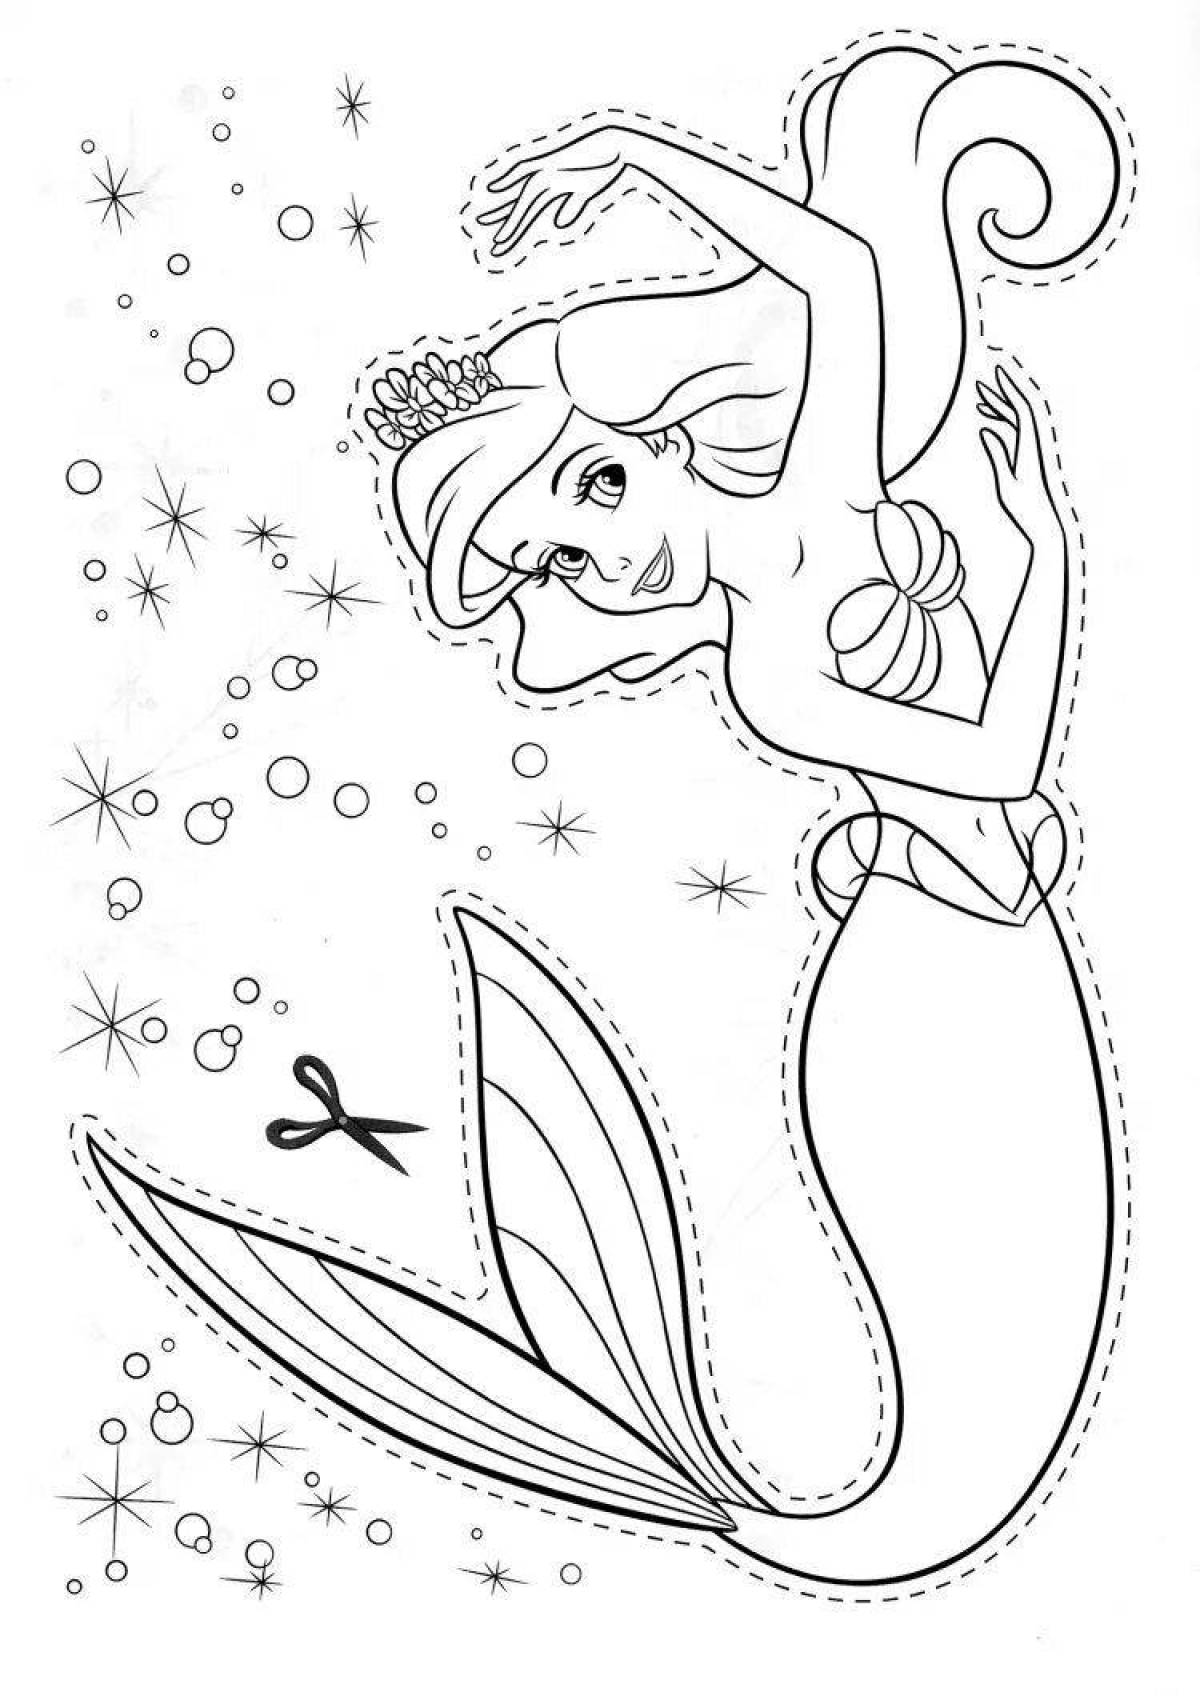 Fancy mermaid coloring by numbers